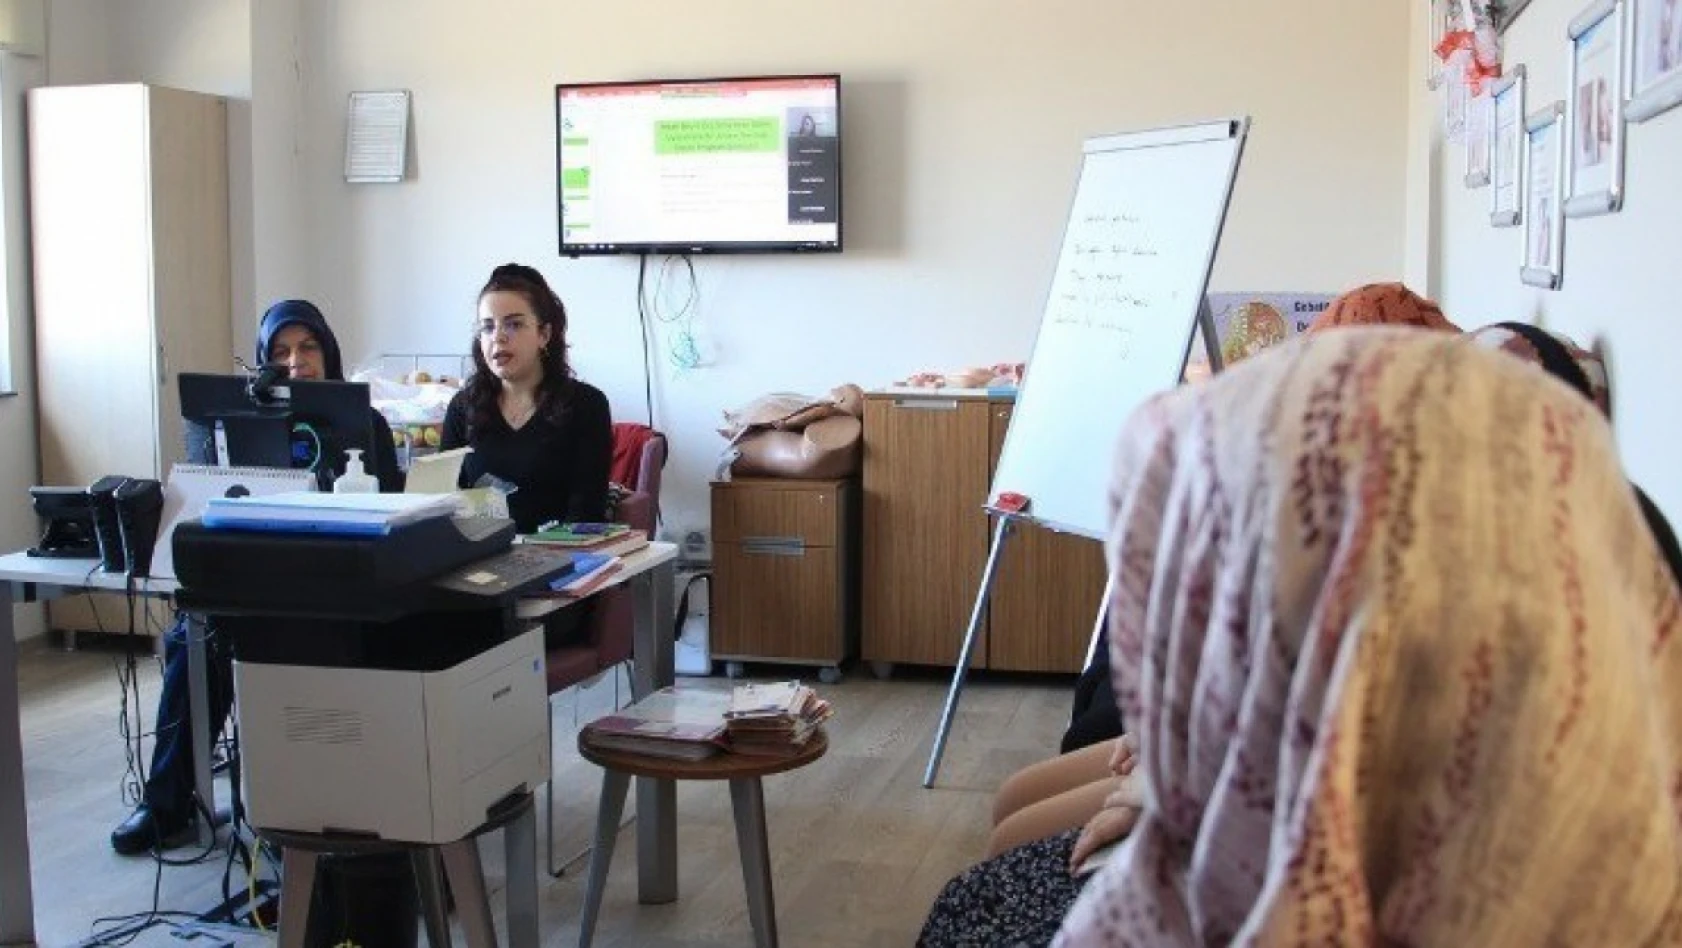 Elazığ'da depremzede anne ve anne adaylarına psikososyal destek eğitimi